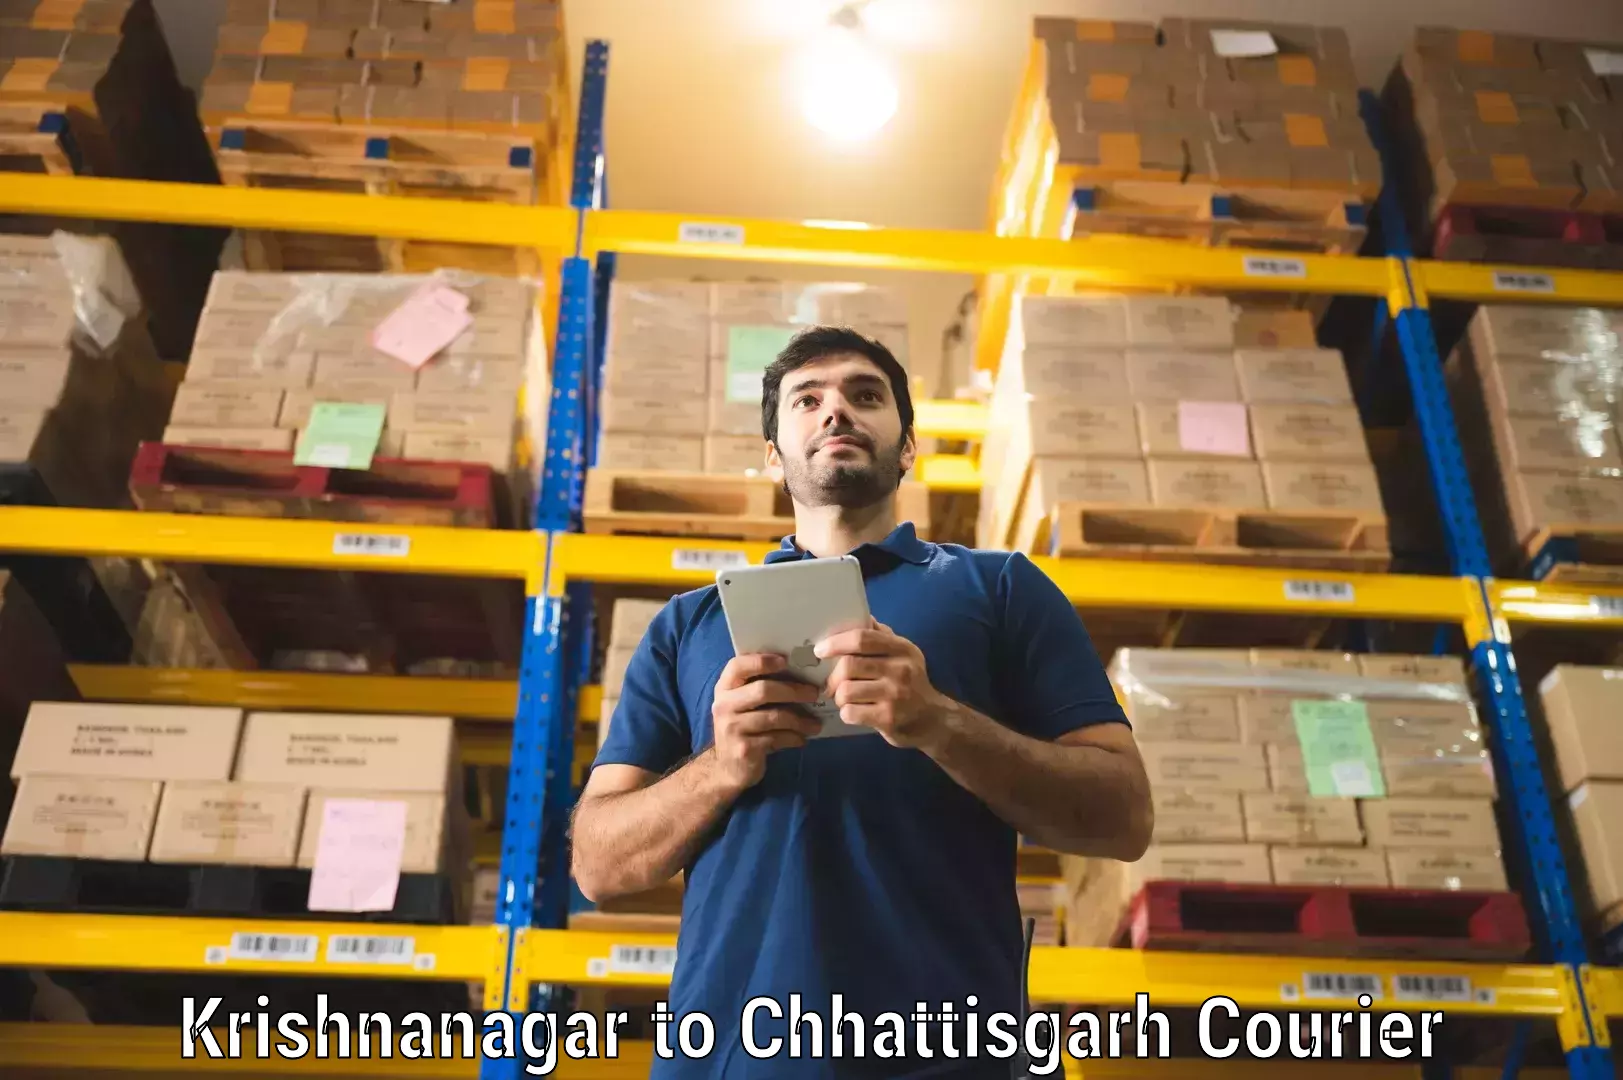 Courier service partnerships Krishnanagar to Raipur